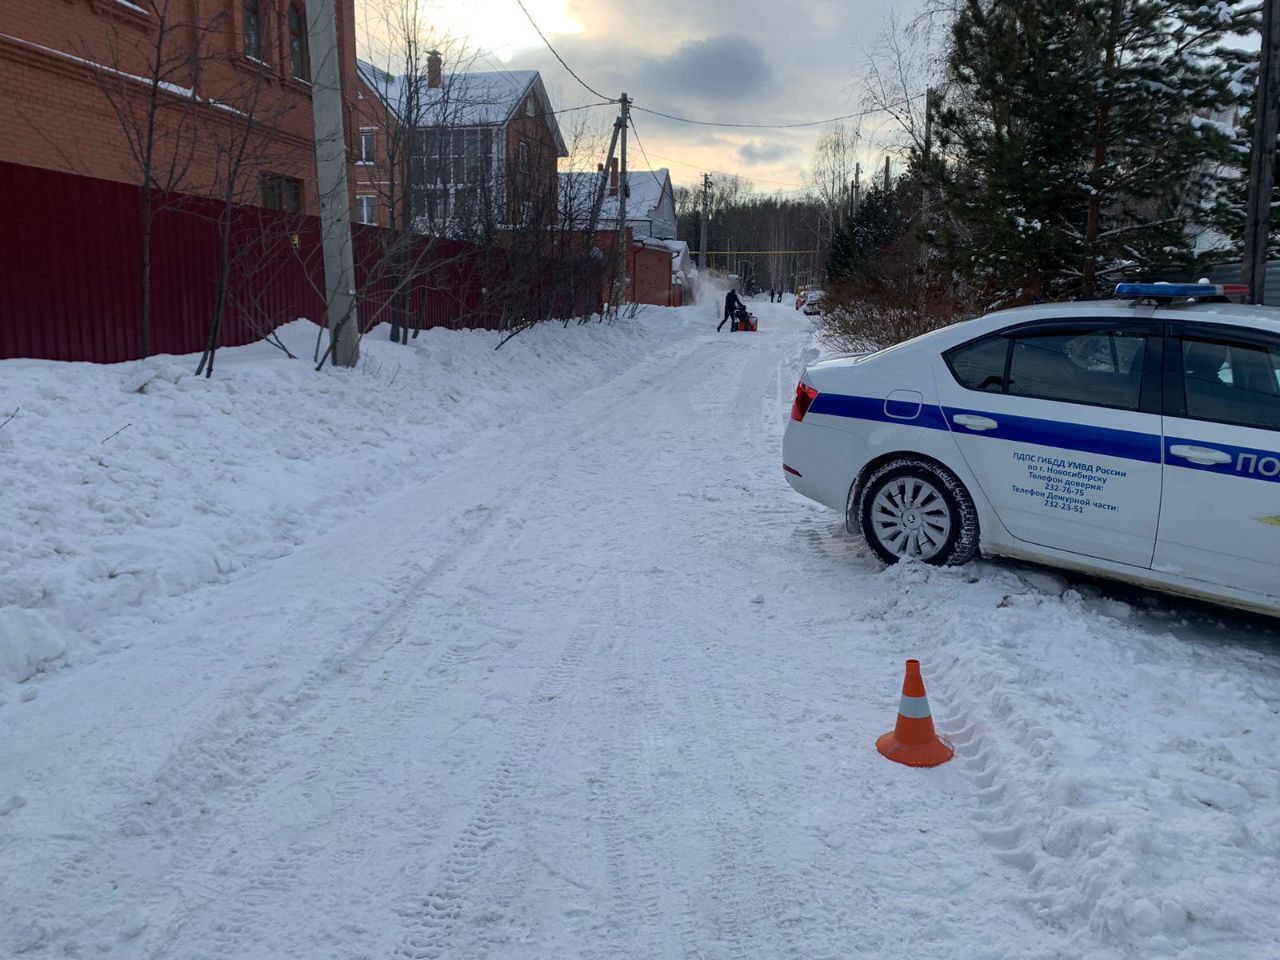 Подросток попал под колеса погрузчика около частного дома в Новосибирске — мальчика доставили в больницу